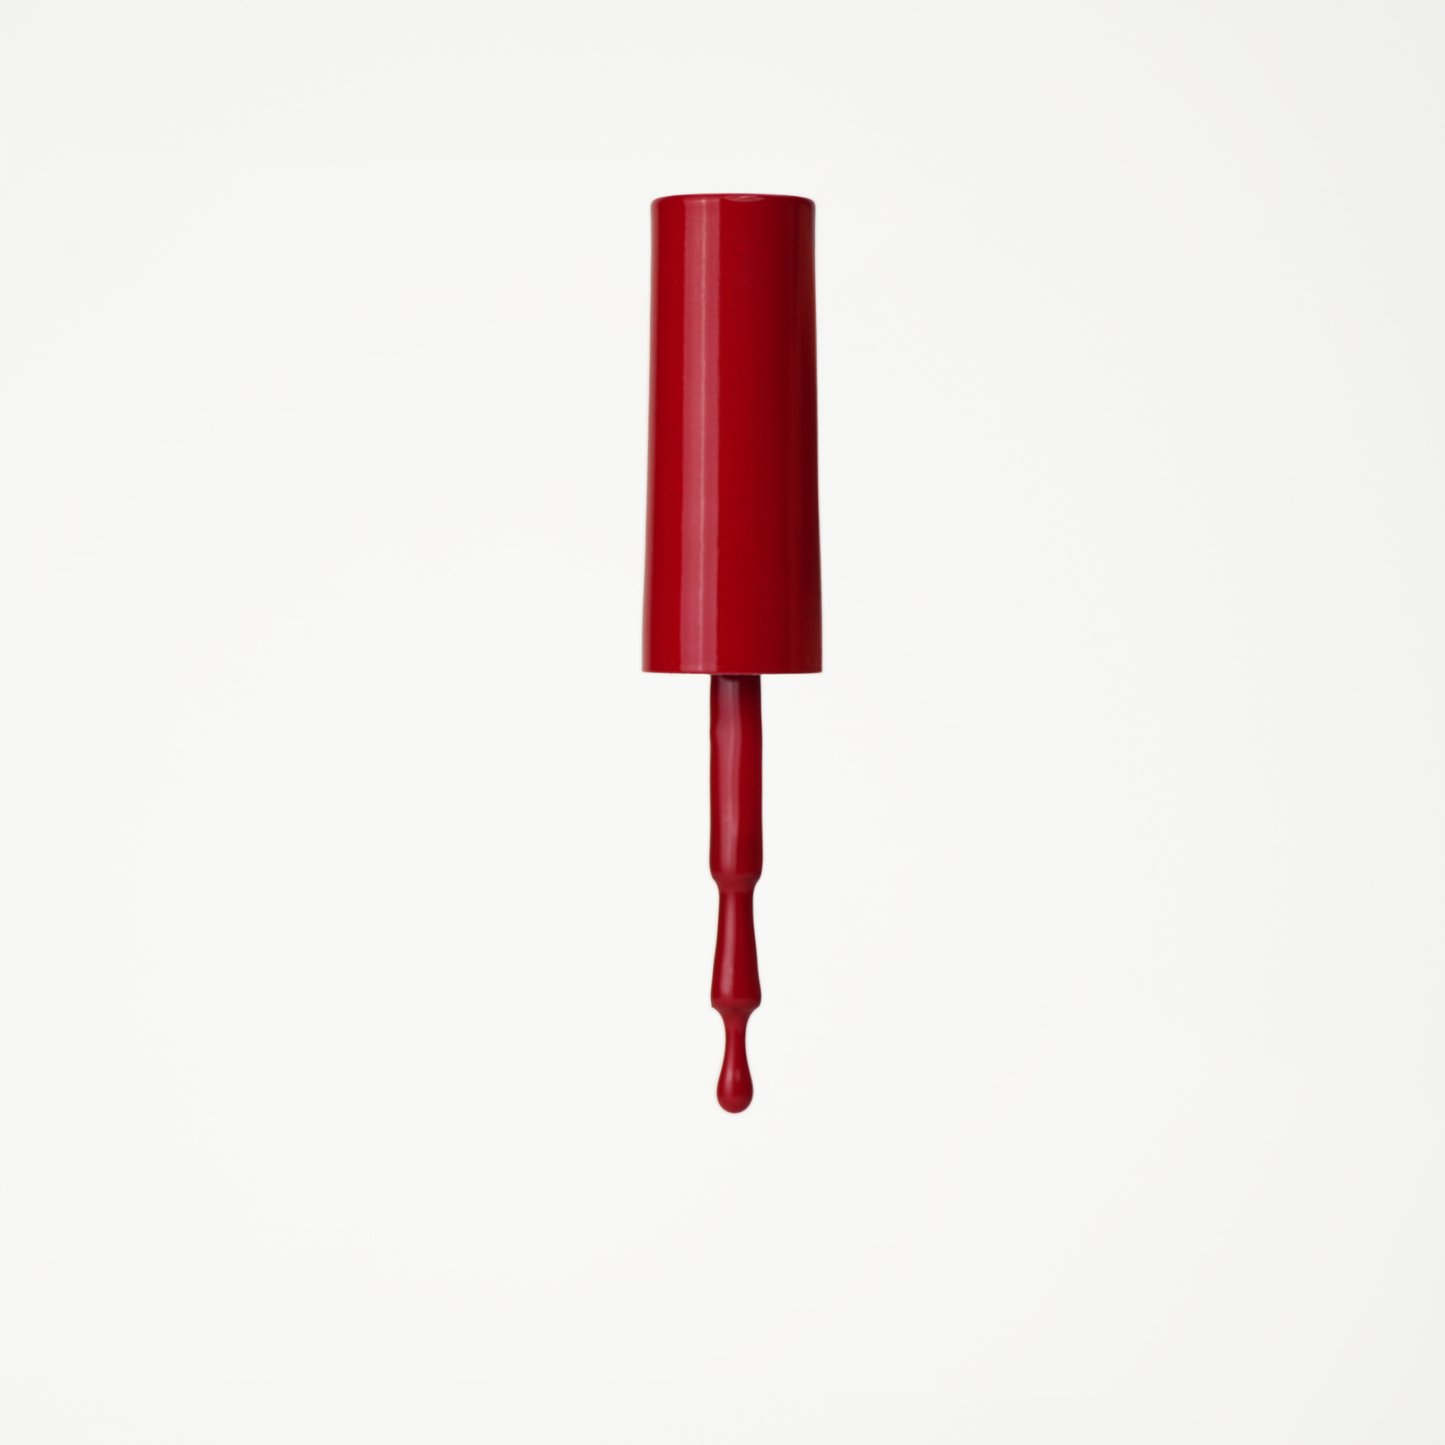 Bottle of red velvet vivid red gel nail polish from Skynailbysugar